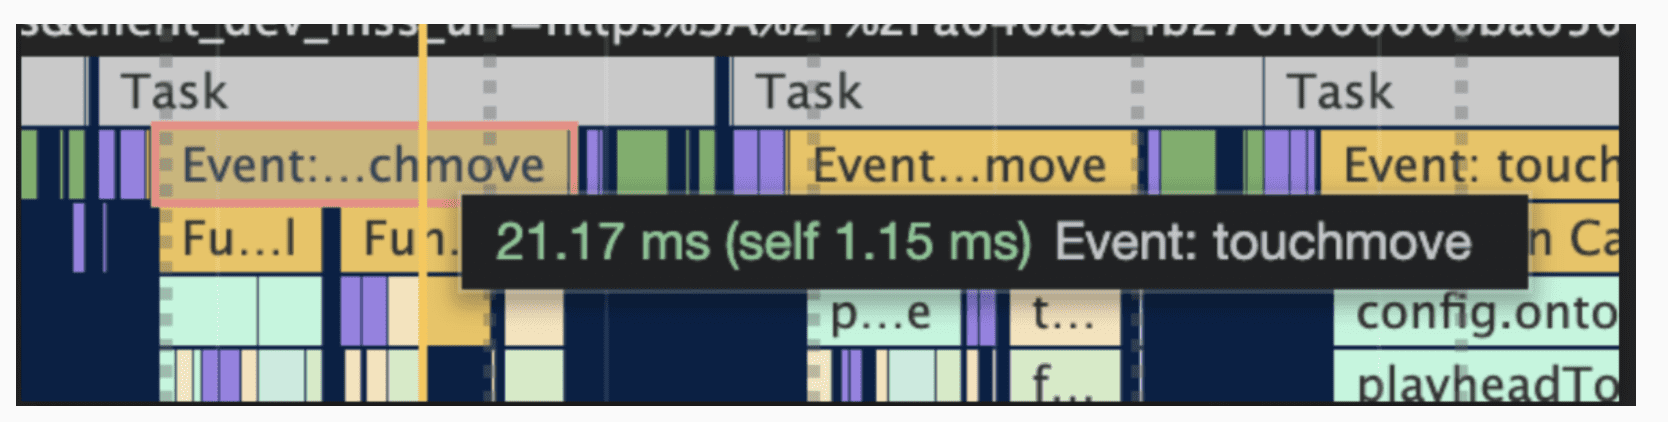 Evento de 21.17 ms que se muestra en el cronograma de rendimiento.